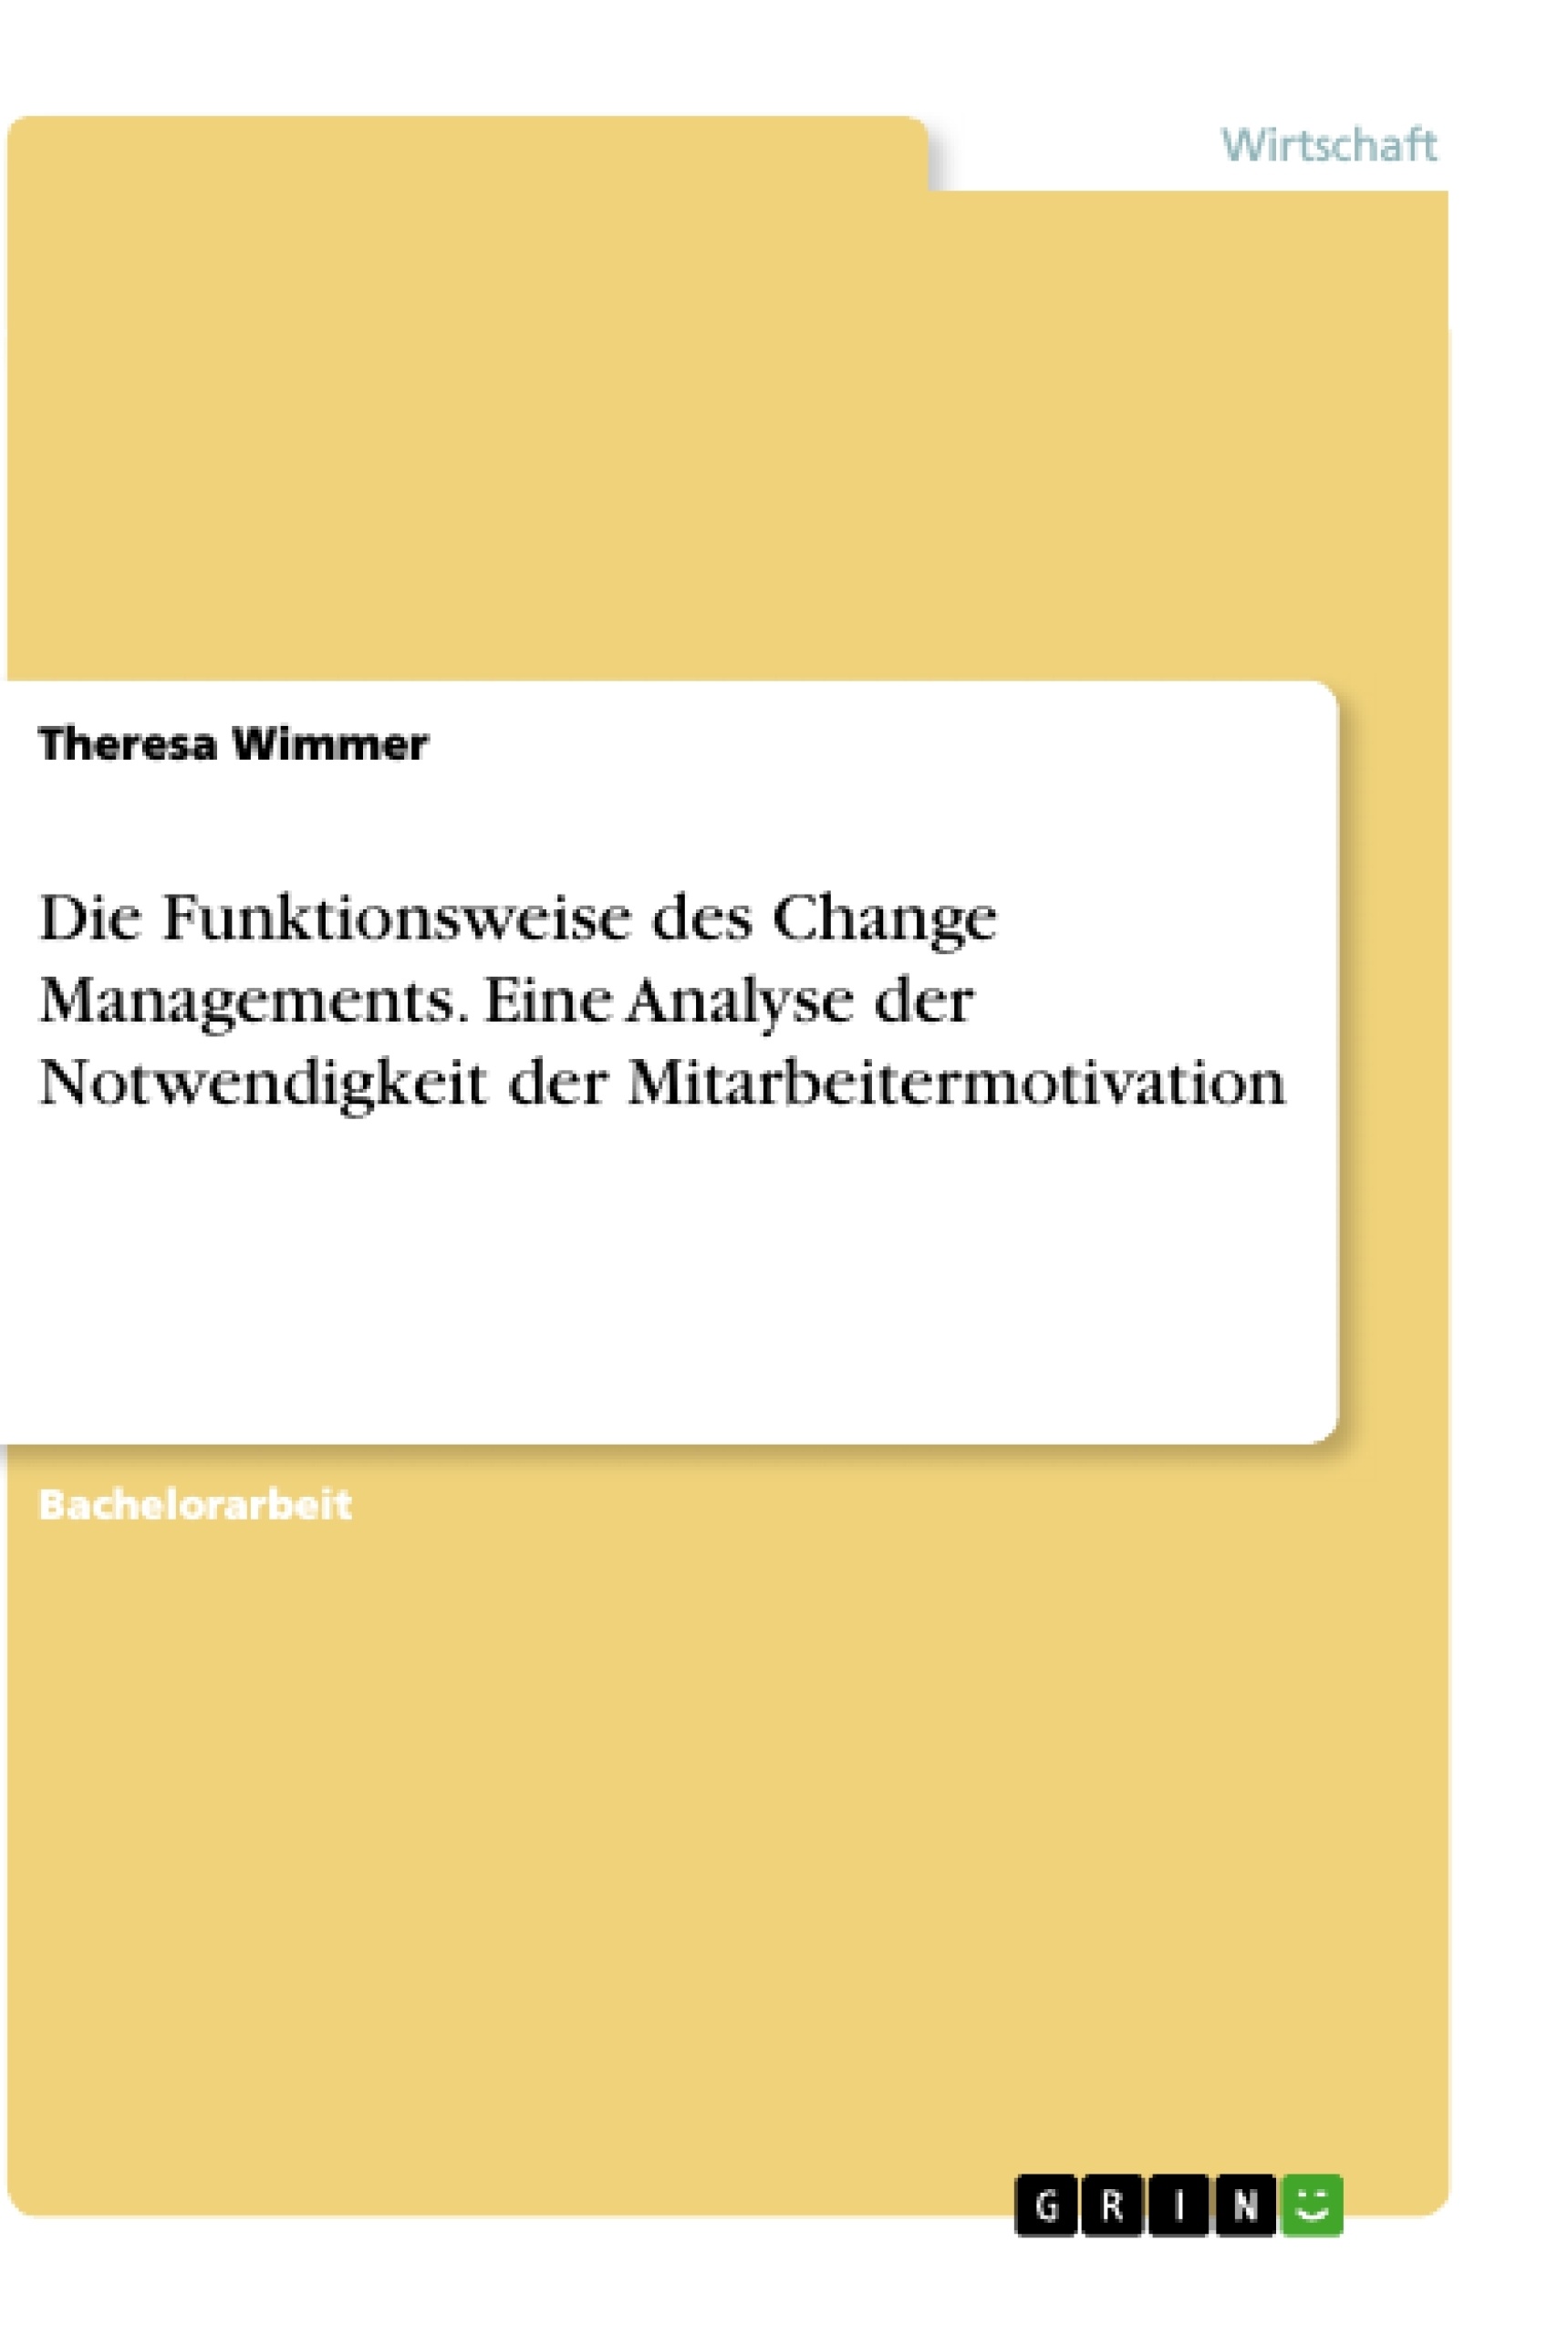 Título: Die Funktionsweise des Change Managements. Eine Analyse der Notwendigkeit der Mitarbeitermotivation